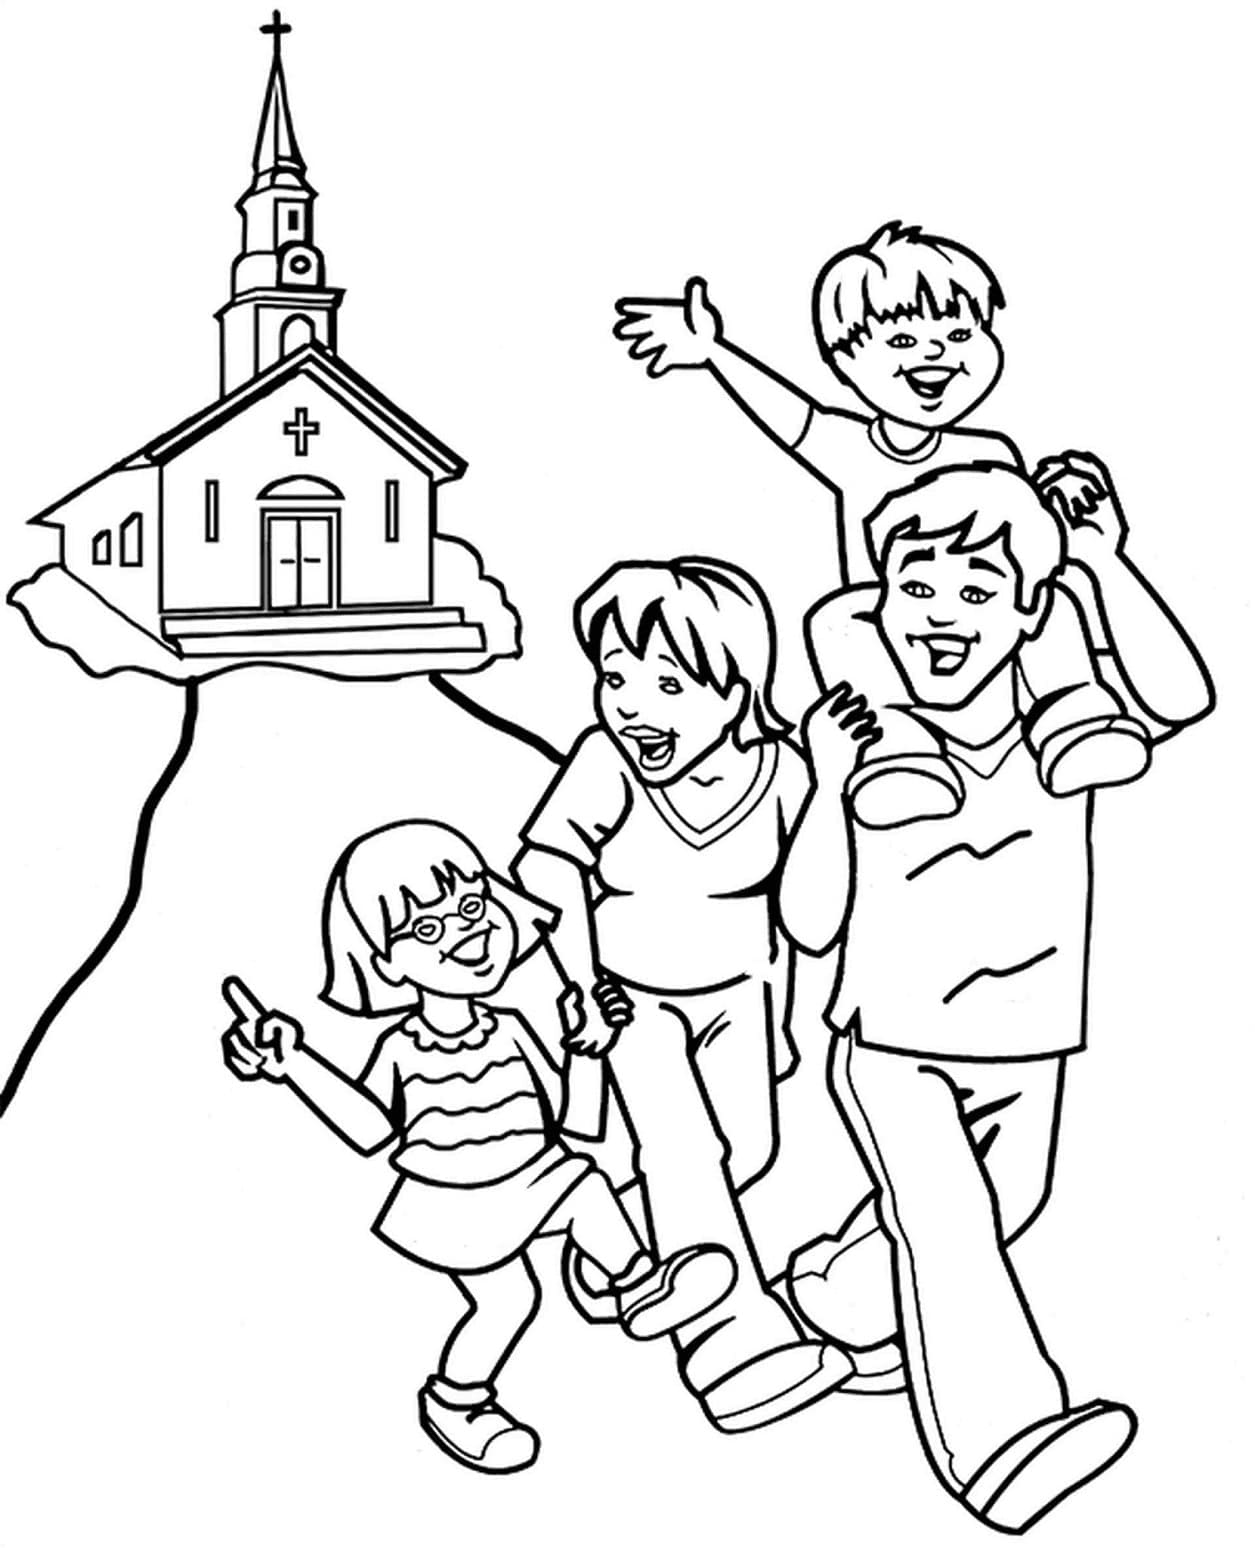 La Famille va à l’église coloring page